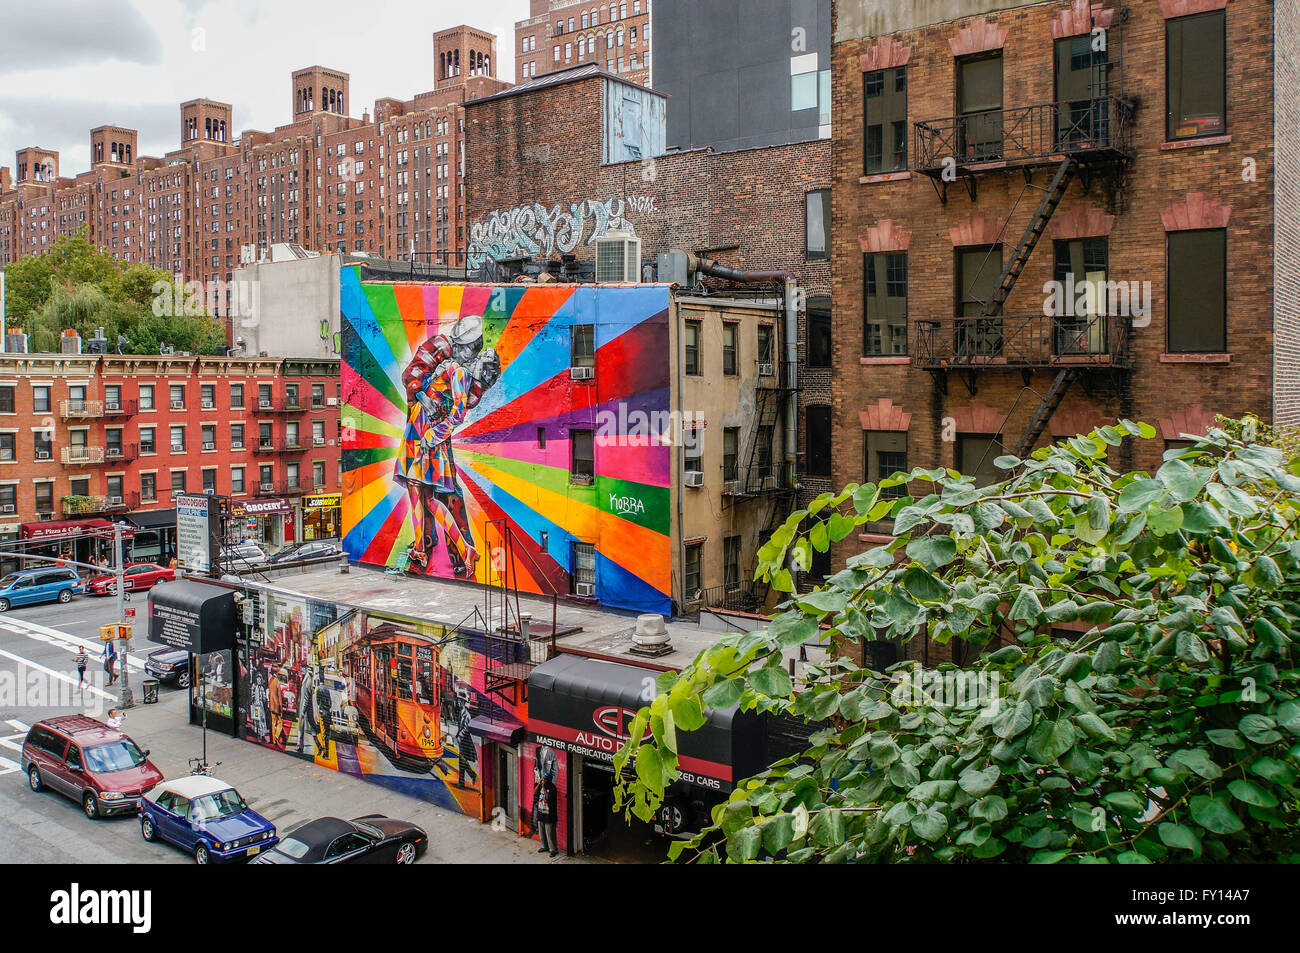 Graffiti-Kunst-Installation an Gebäuden aus der High Line, Meatpacking District, New York City zu sehen Stockfoto